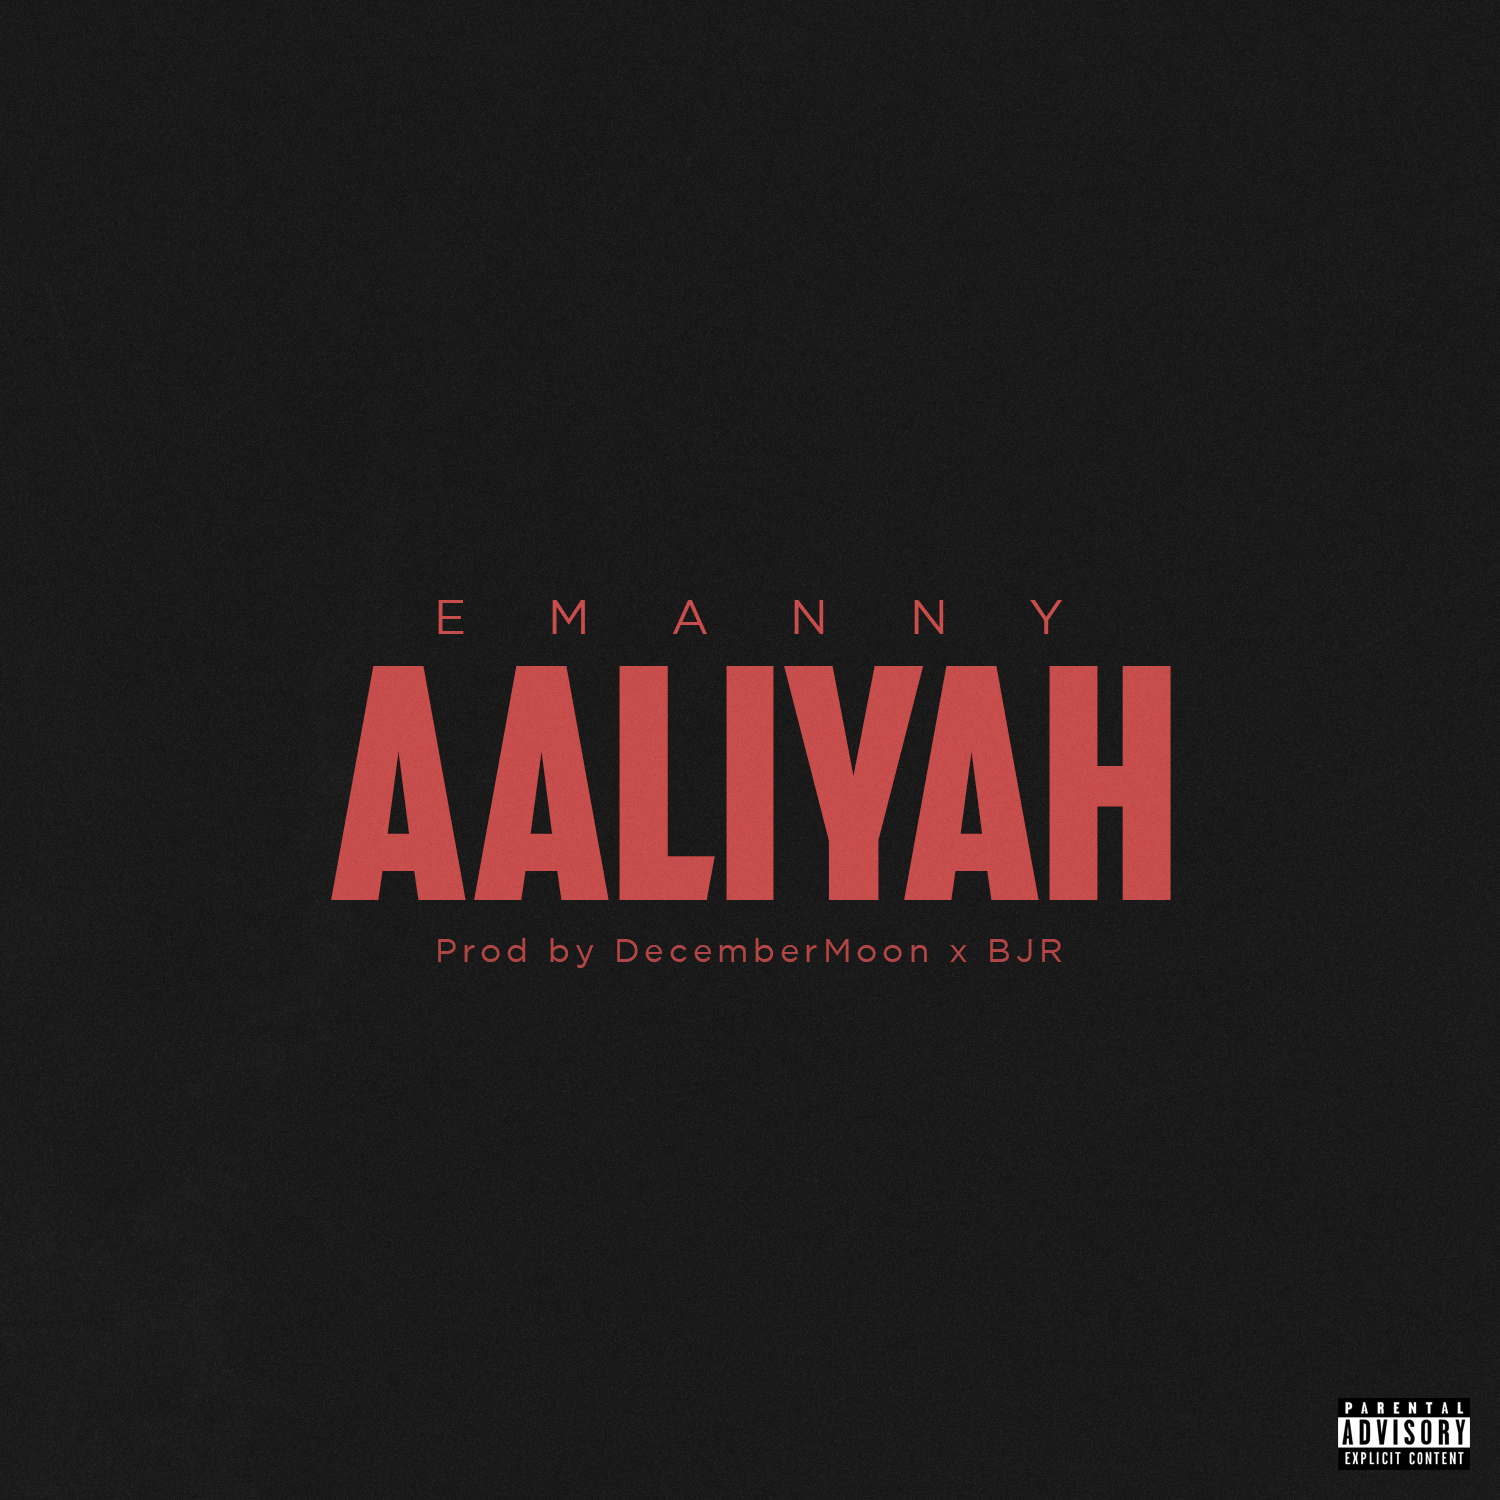 Emanny Aaliyah